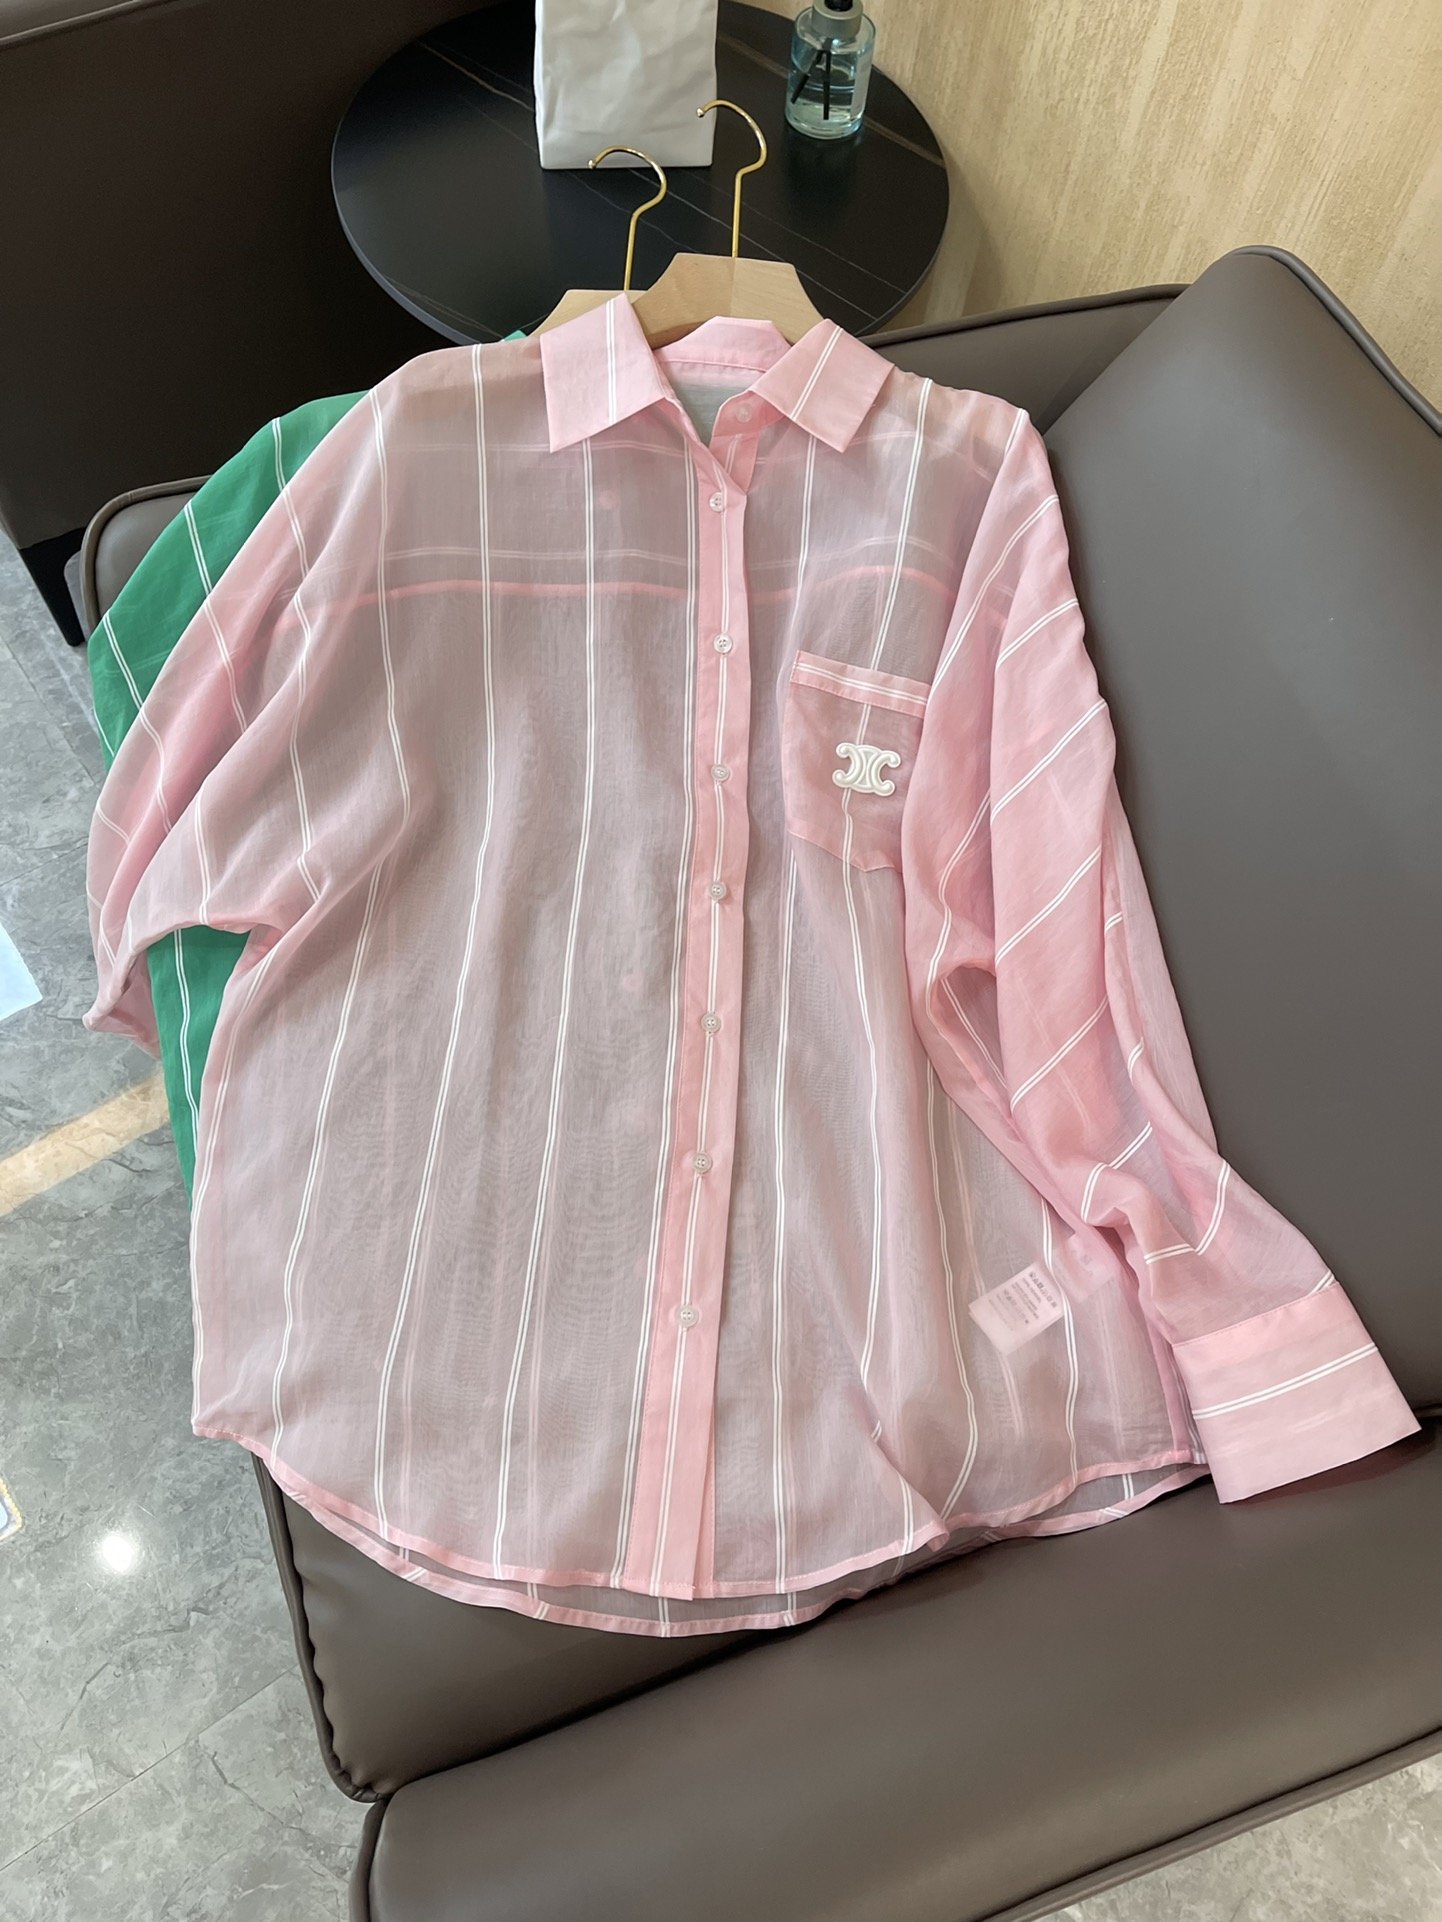 22A1esdjb#新款衬衫⚠️Pzzdqdceline 天丝棉 透明材质 条纹格子 长袖宽松 防晒衬衫 粉色 绿色 SML